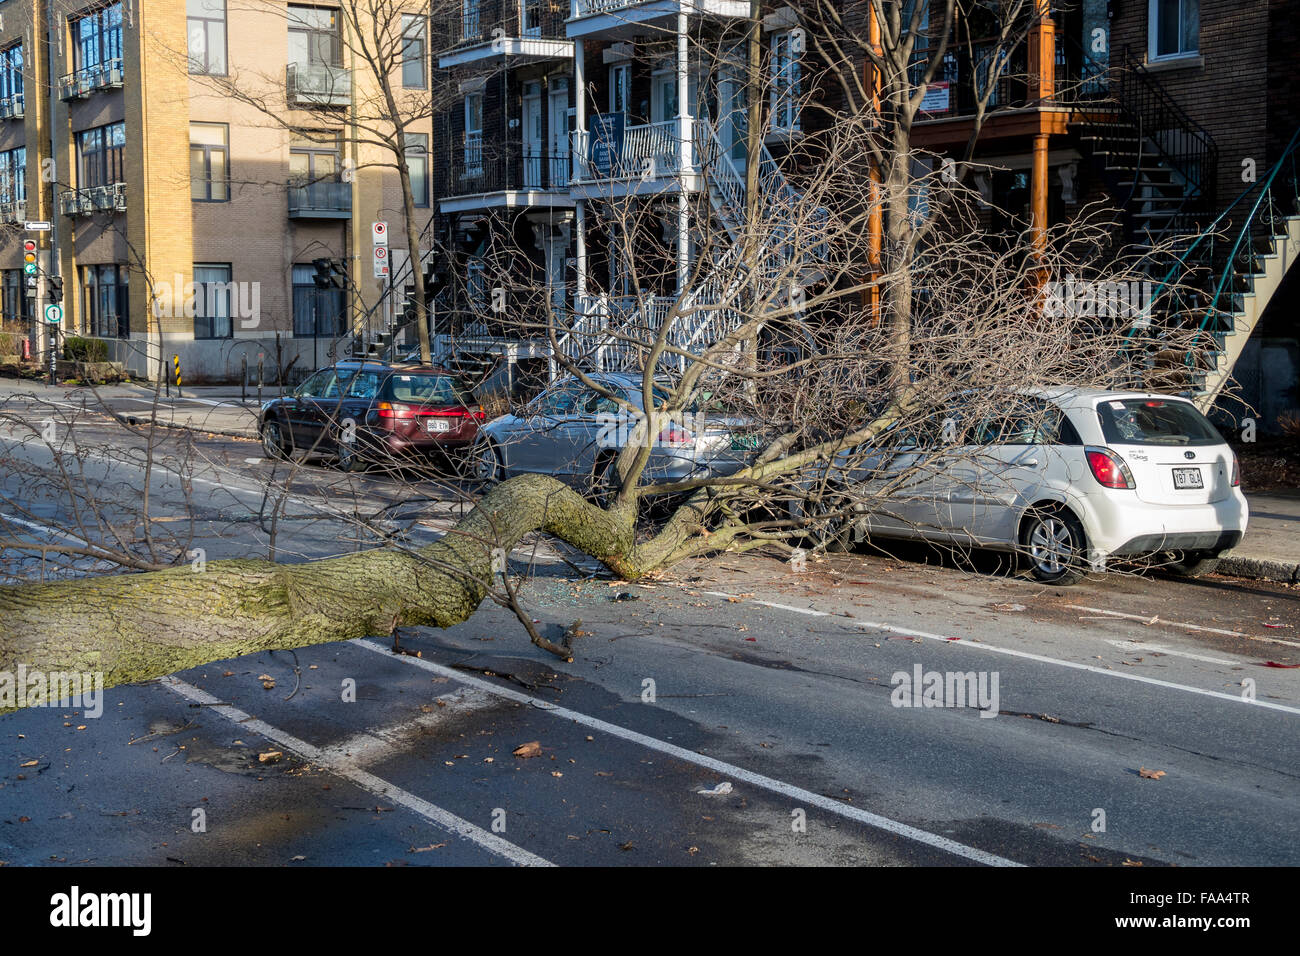 Montreal, Canada. 24 dicembre, 2015. un albero cade su una strada su una vettura come un risultato di forte vento laurier street in Montreal. Credito: marc bruxelle/alamy live news Foto Stock